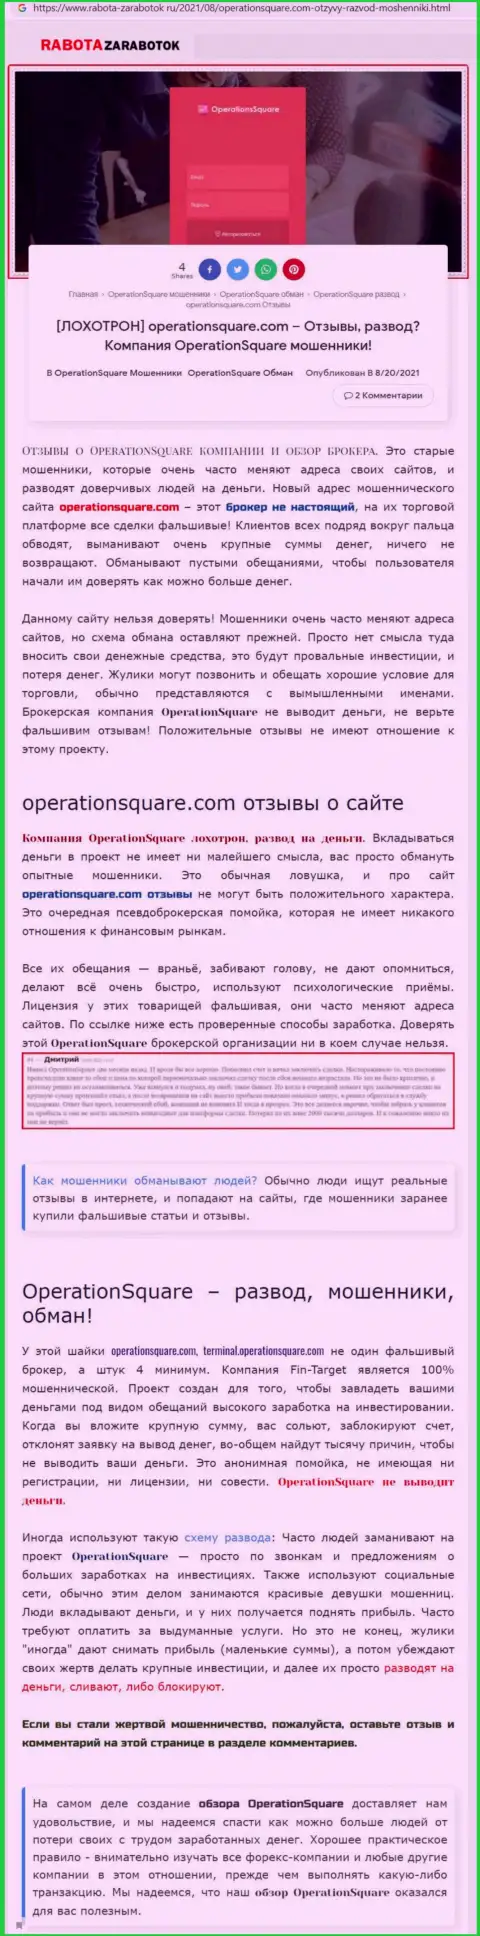 OperationSquare - это ЖУЛИКИ !!! Методы слива и честные отзывы потерпевших